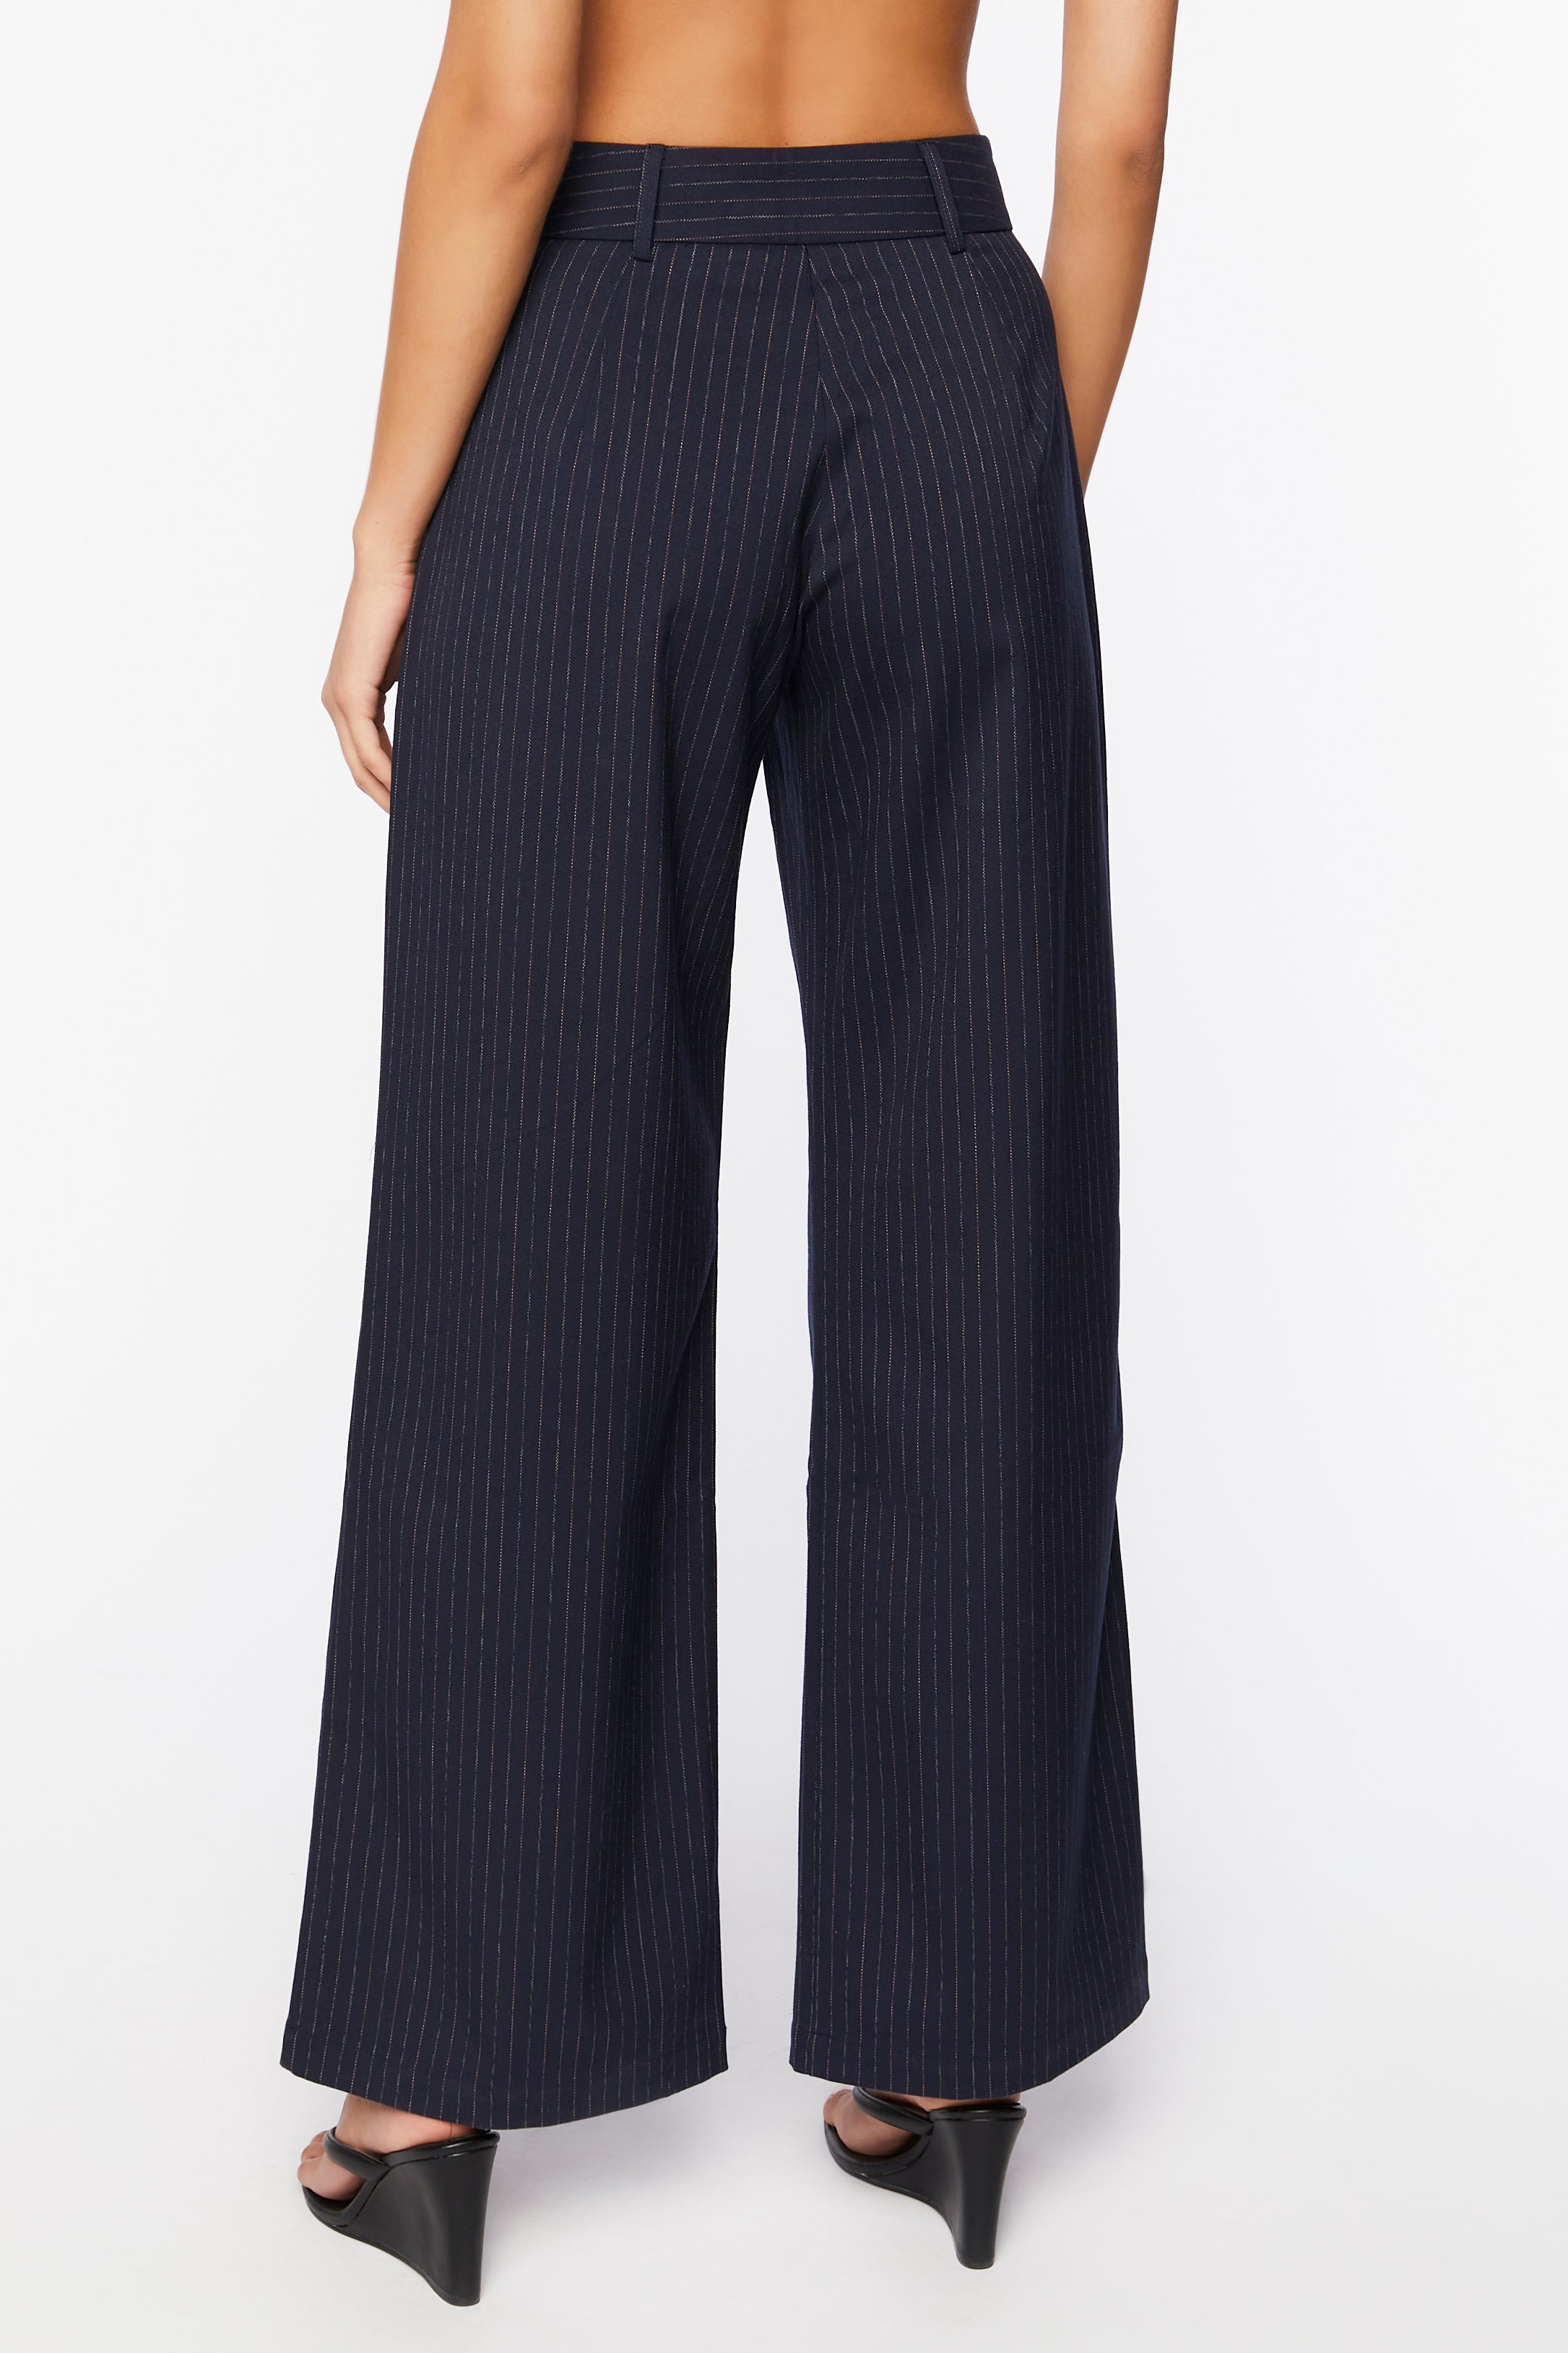 Navywhite Pinstripe Mid-Rise Trouser Pants 3